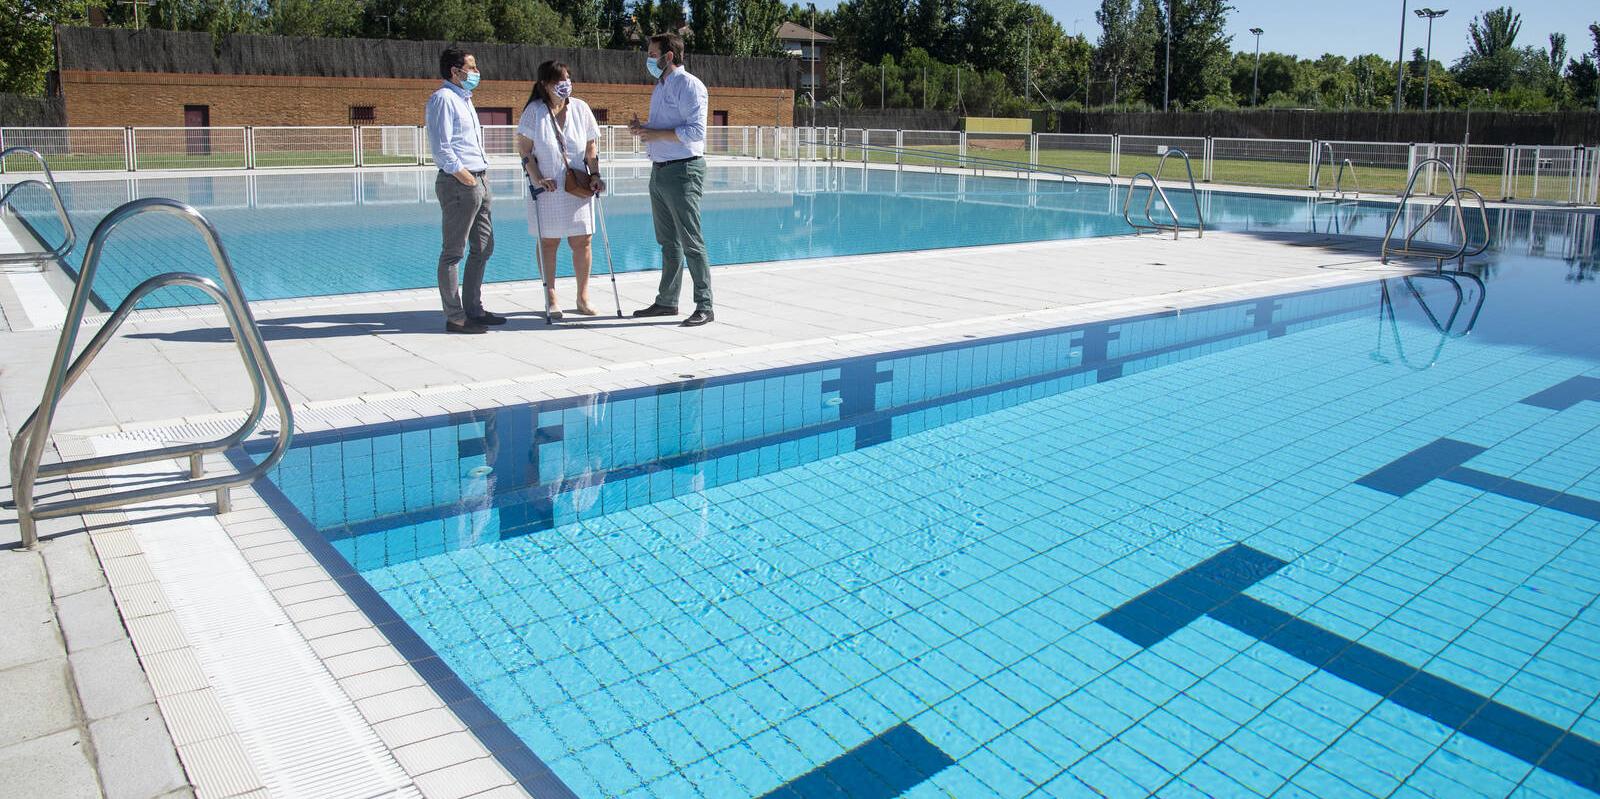 La piscina de verano del polideportivo municipal Carlos Ruiz abre sus puertas